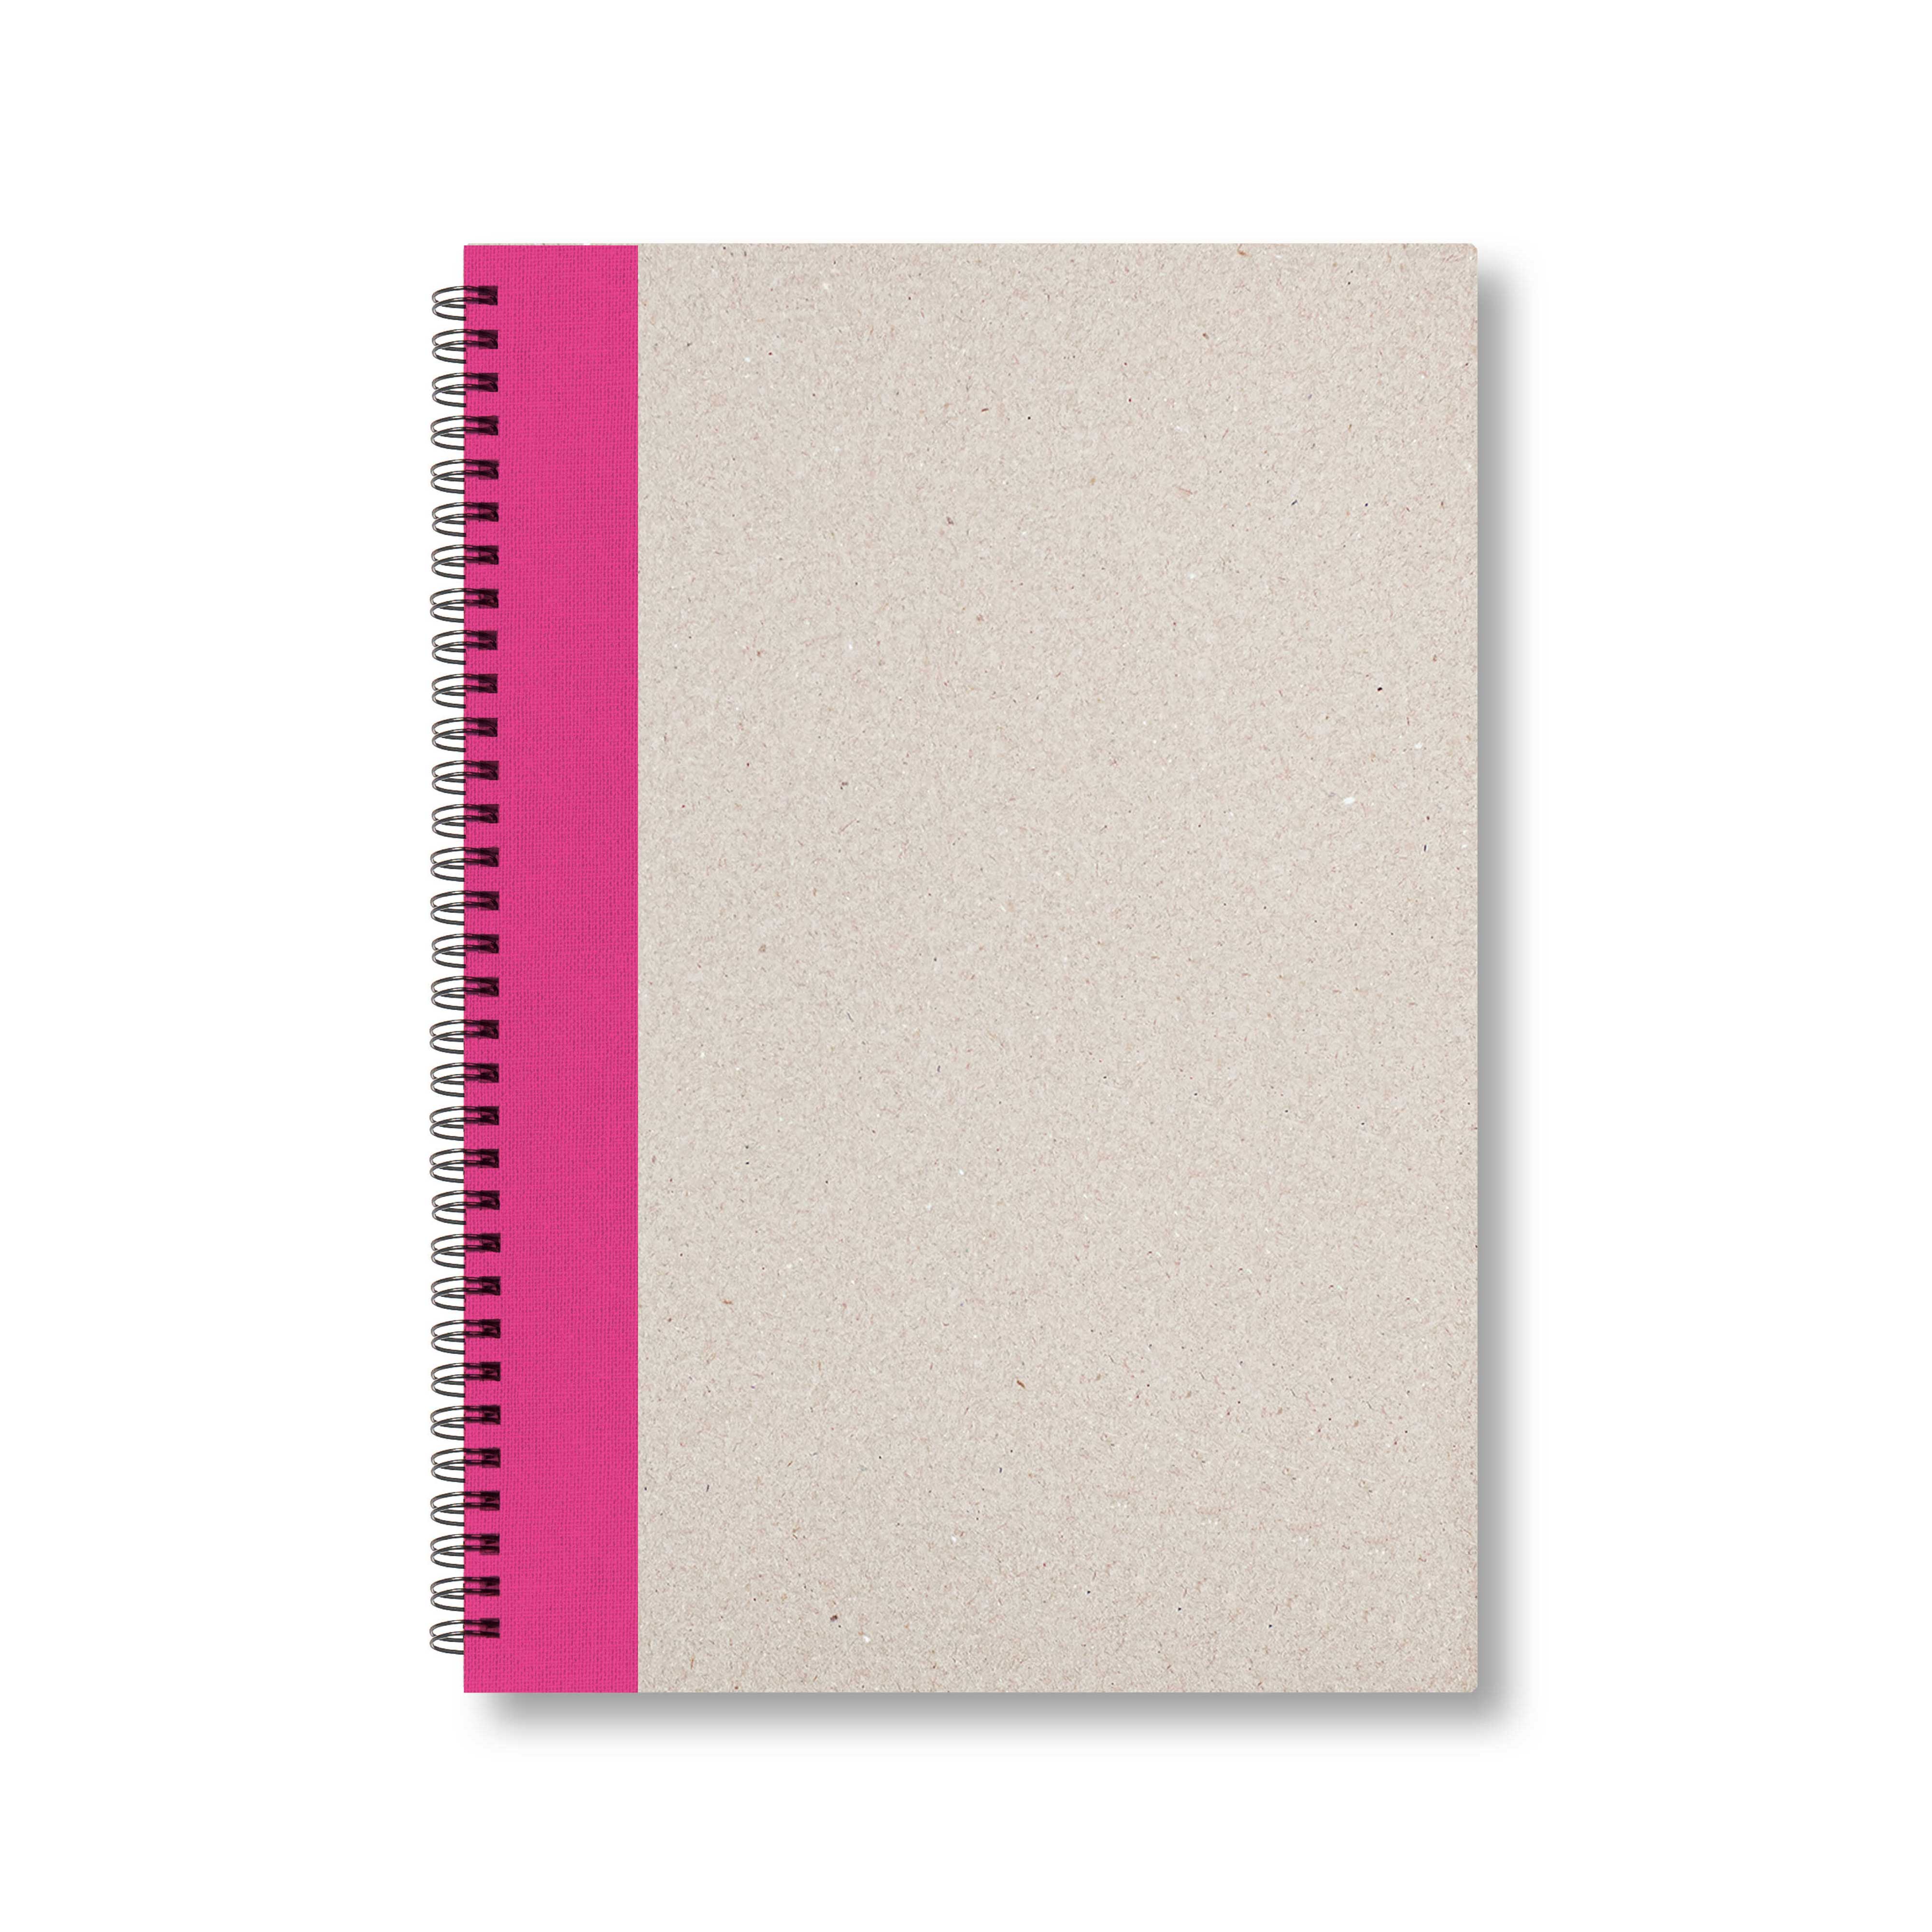 BOBO Zápisník, B5, čistý, růžový, konfiguruj si obálku